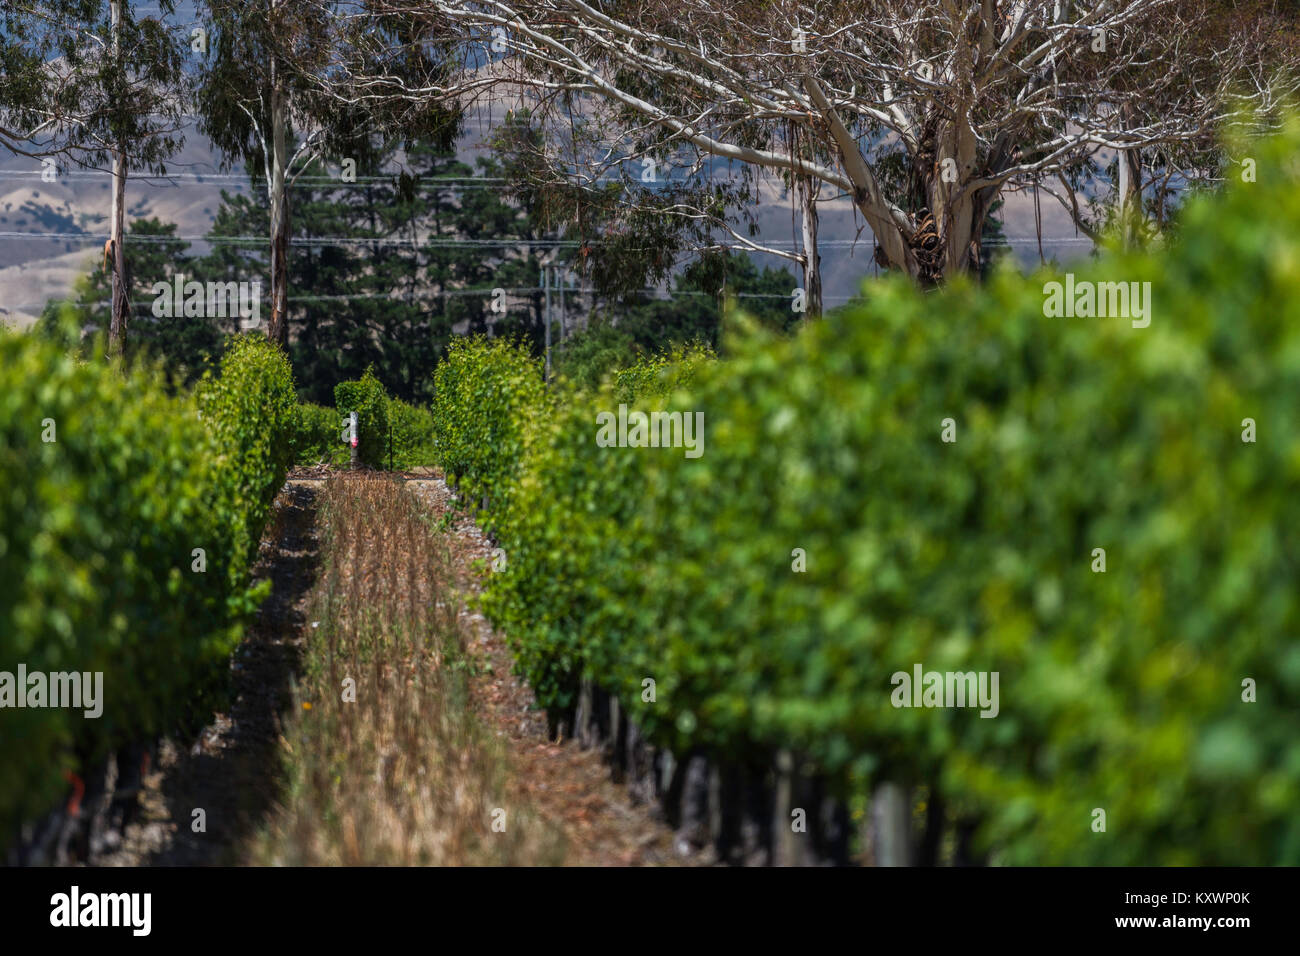 vineyards of Marlborough, New Zealand Stock Photo